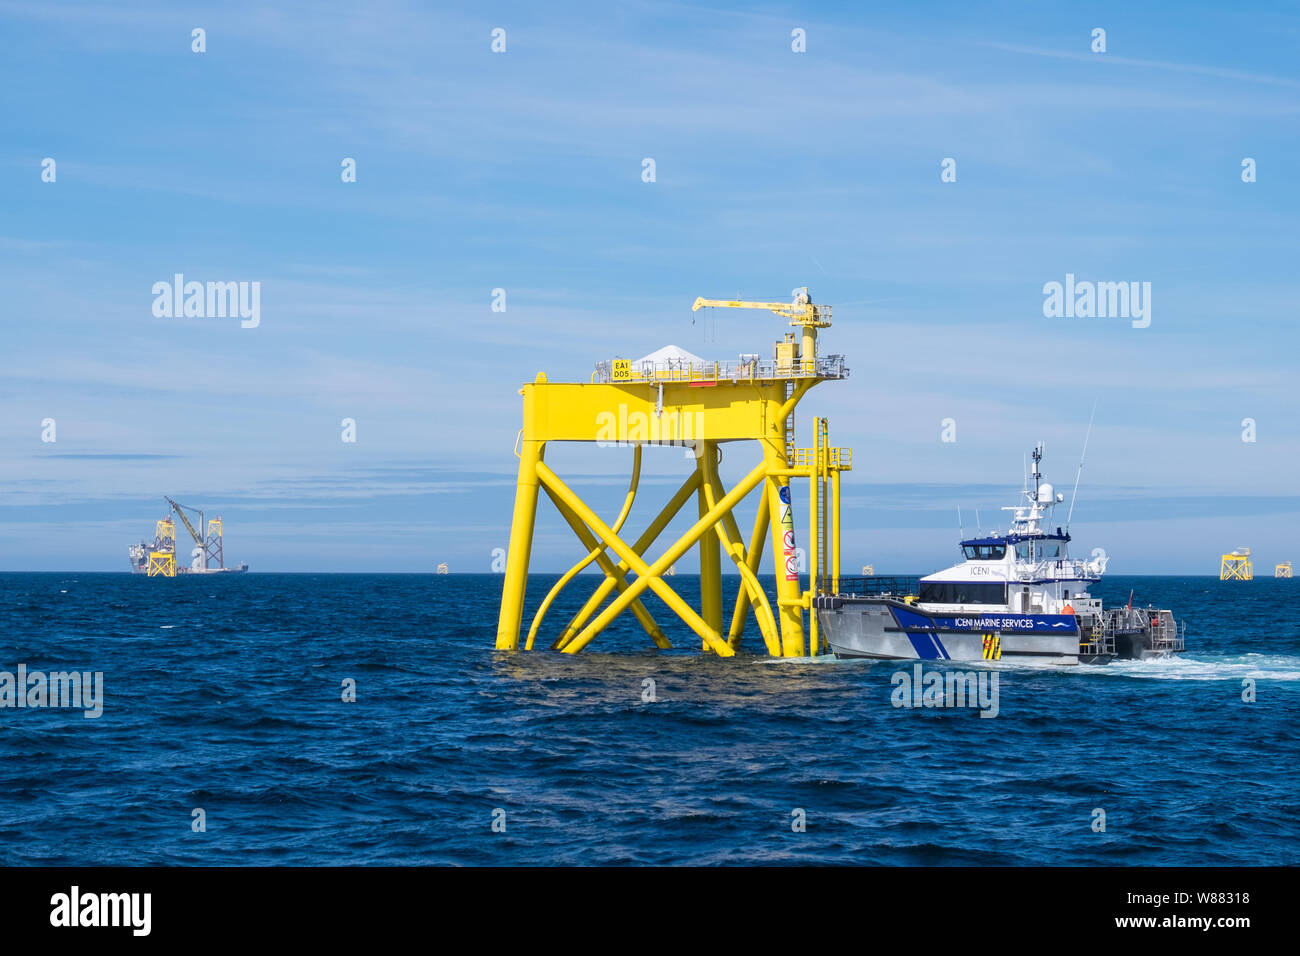 East Anglia un parque eólico offshore durante la construcción del buque de construcción pesada, Boka Levante, levantando una de las chaquetas en lugar Foto de stock